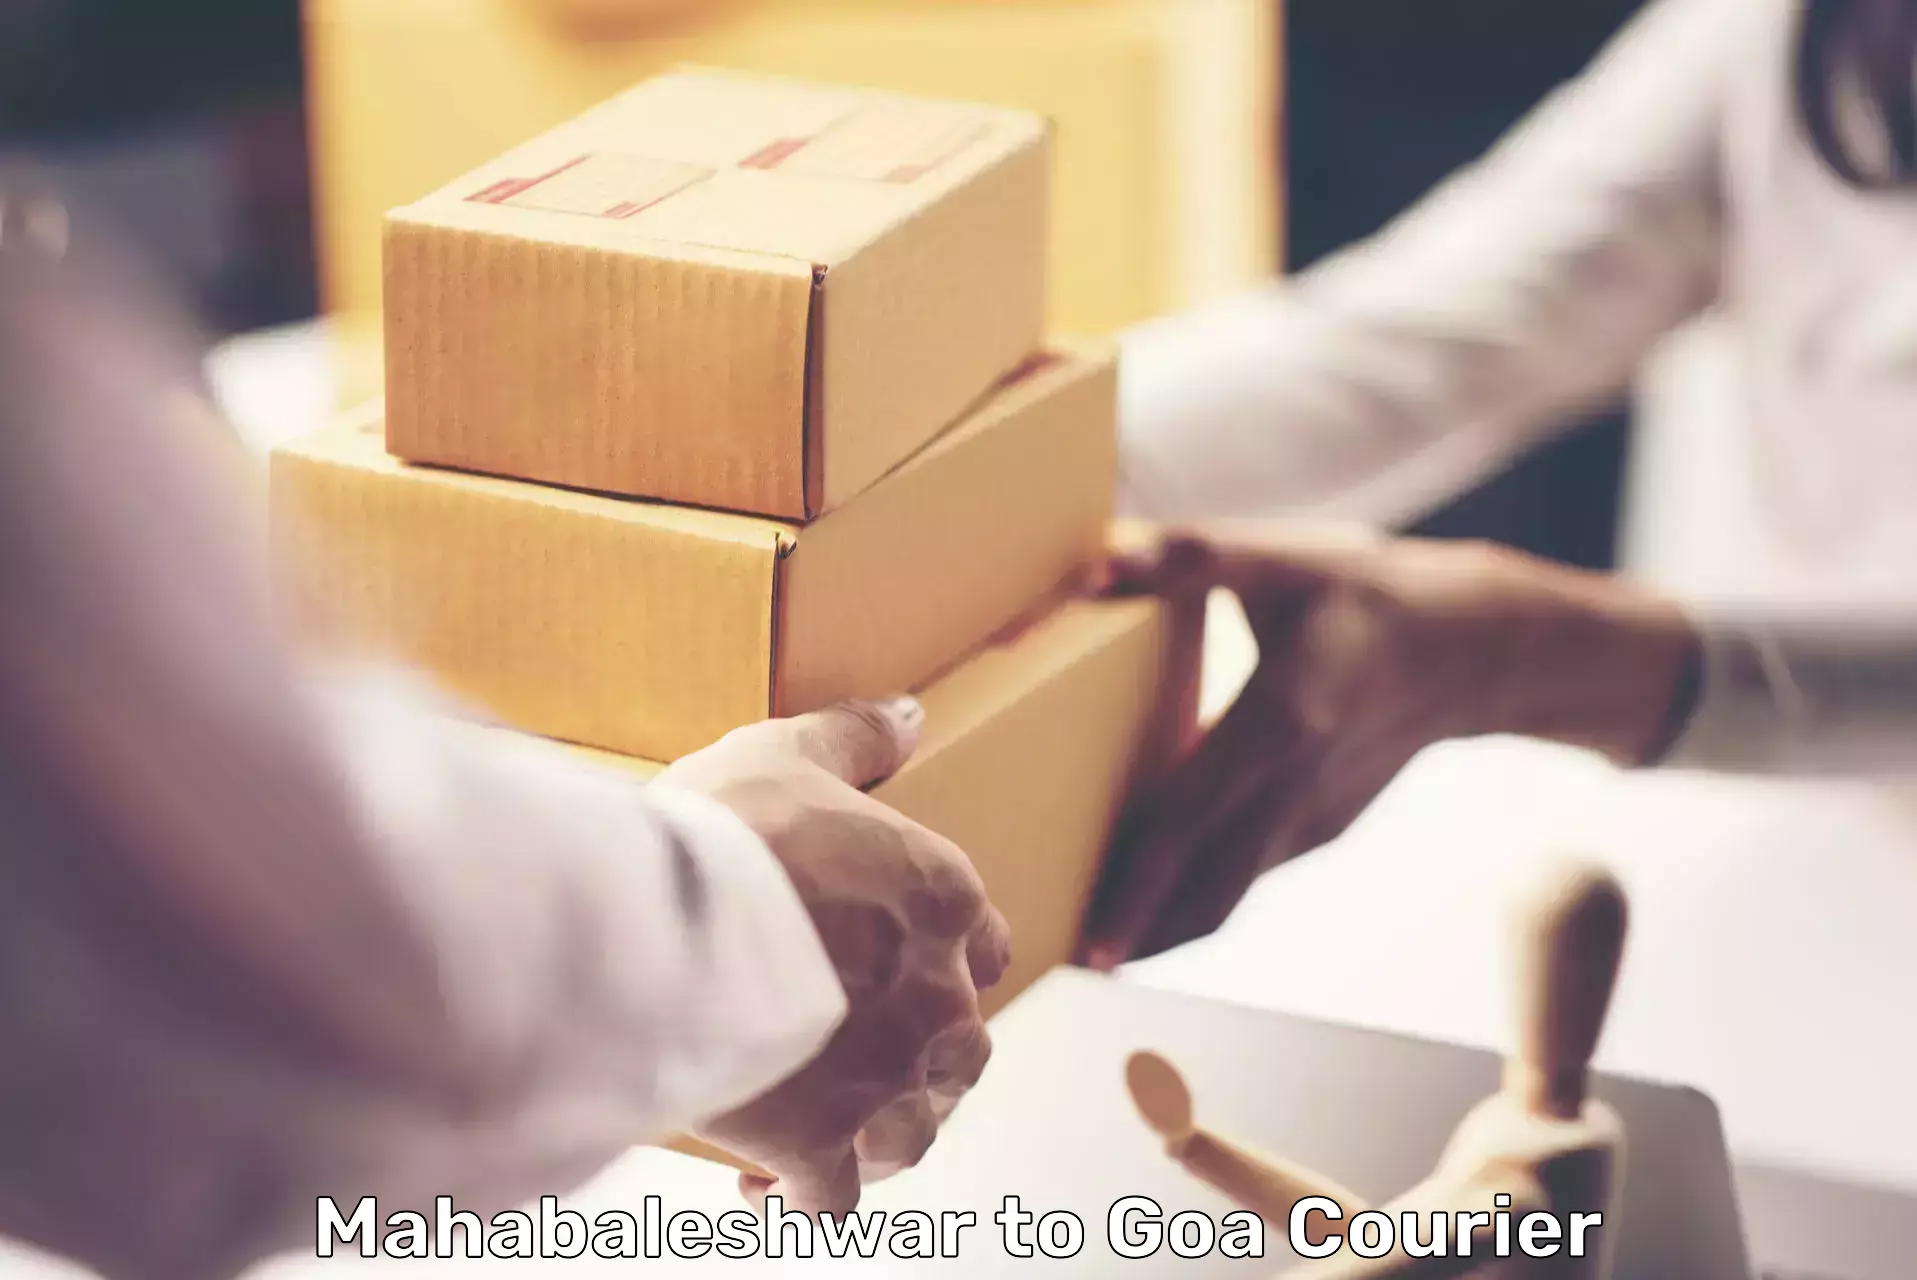 Advanced package delivery Mahabaleshwar to IIT Goa